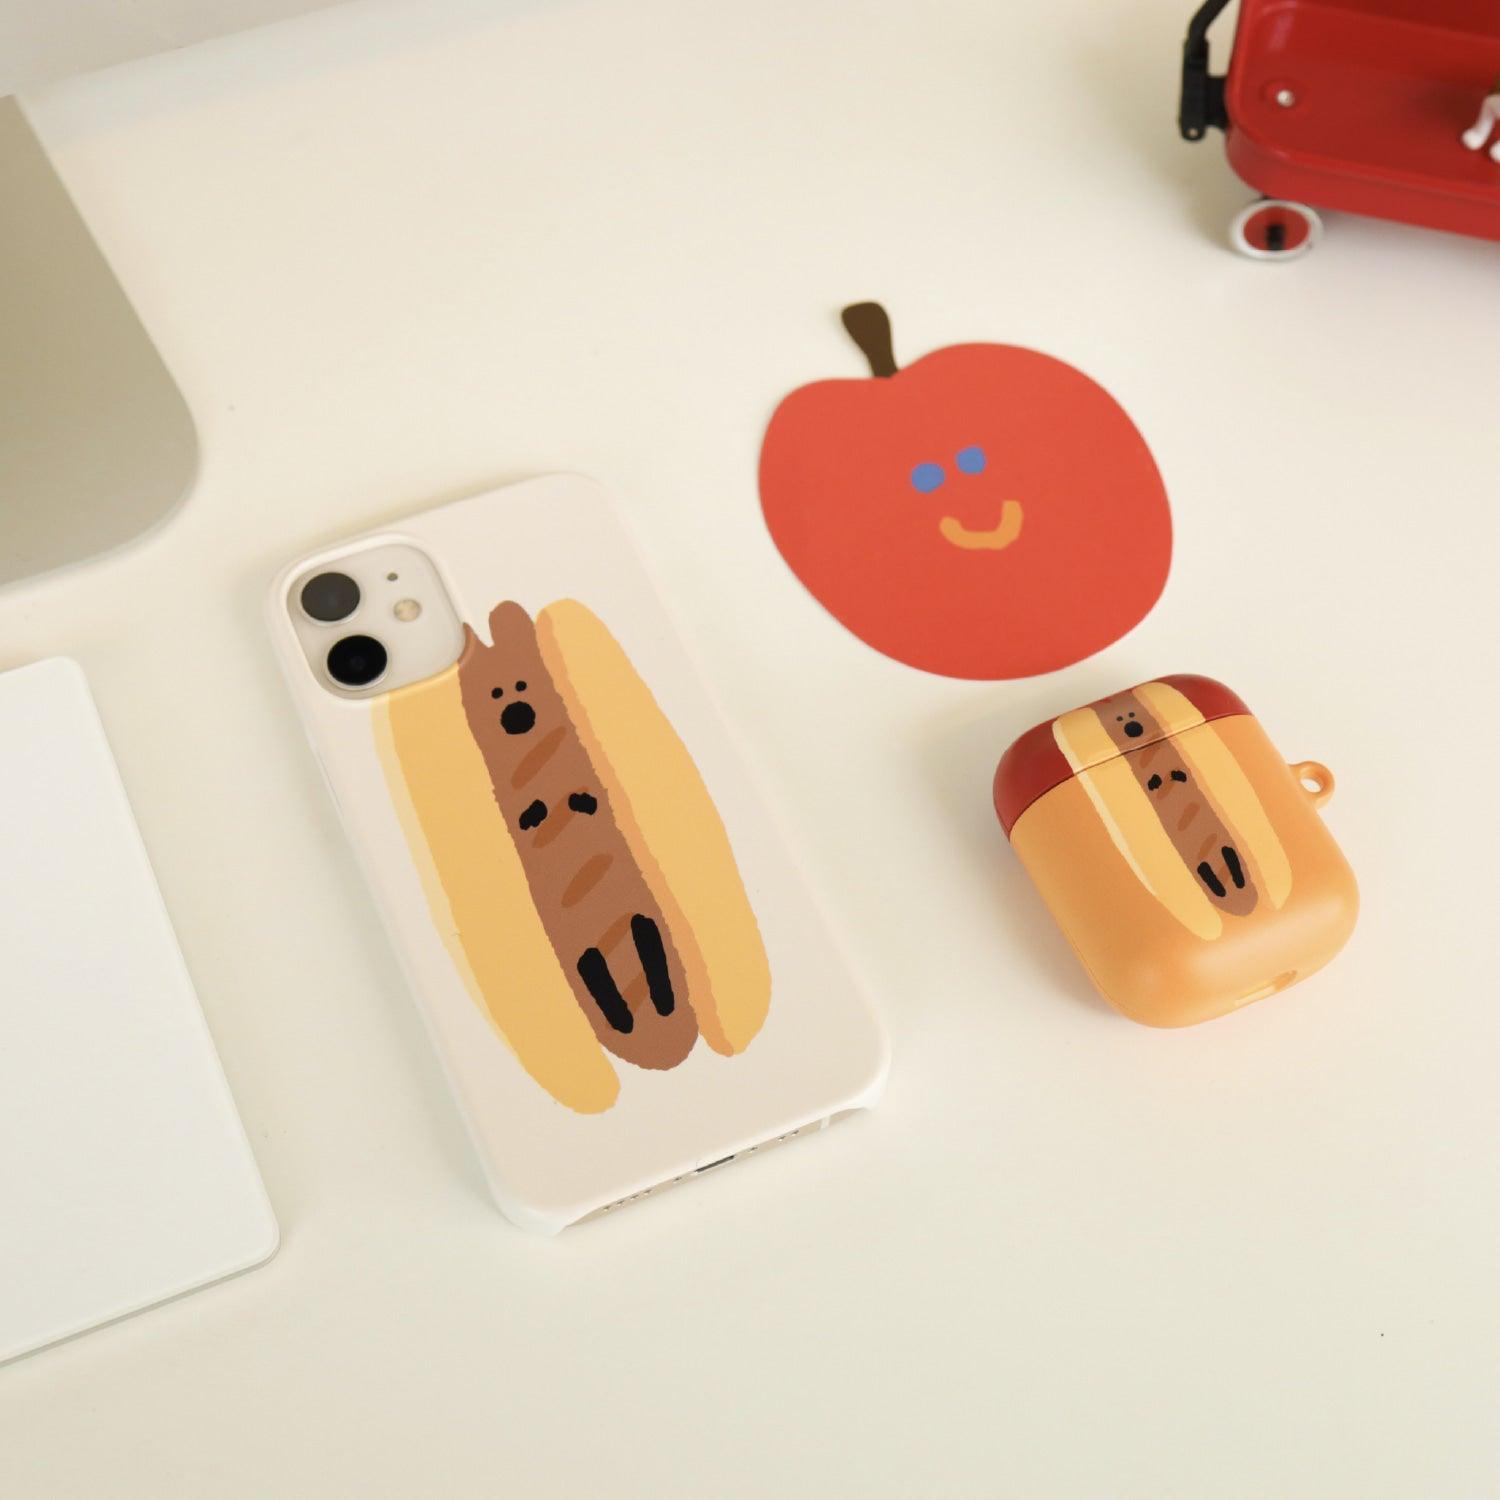 Dinotaeng Quokdog Hardcase iPhone 手機保護殼 - SOUL SIMPLE HK